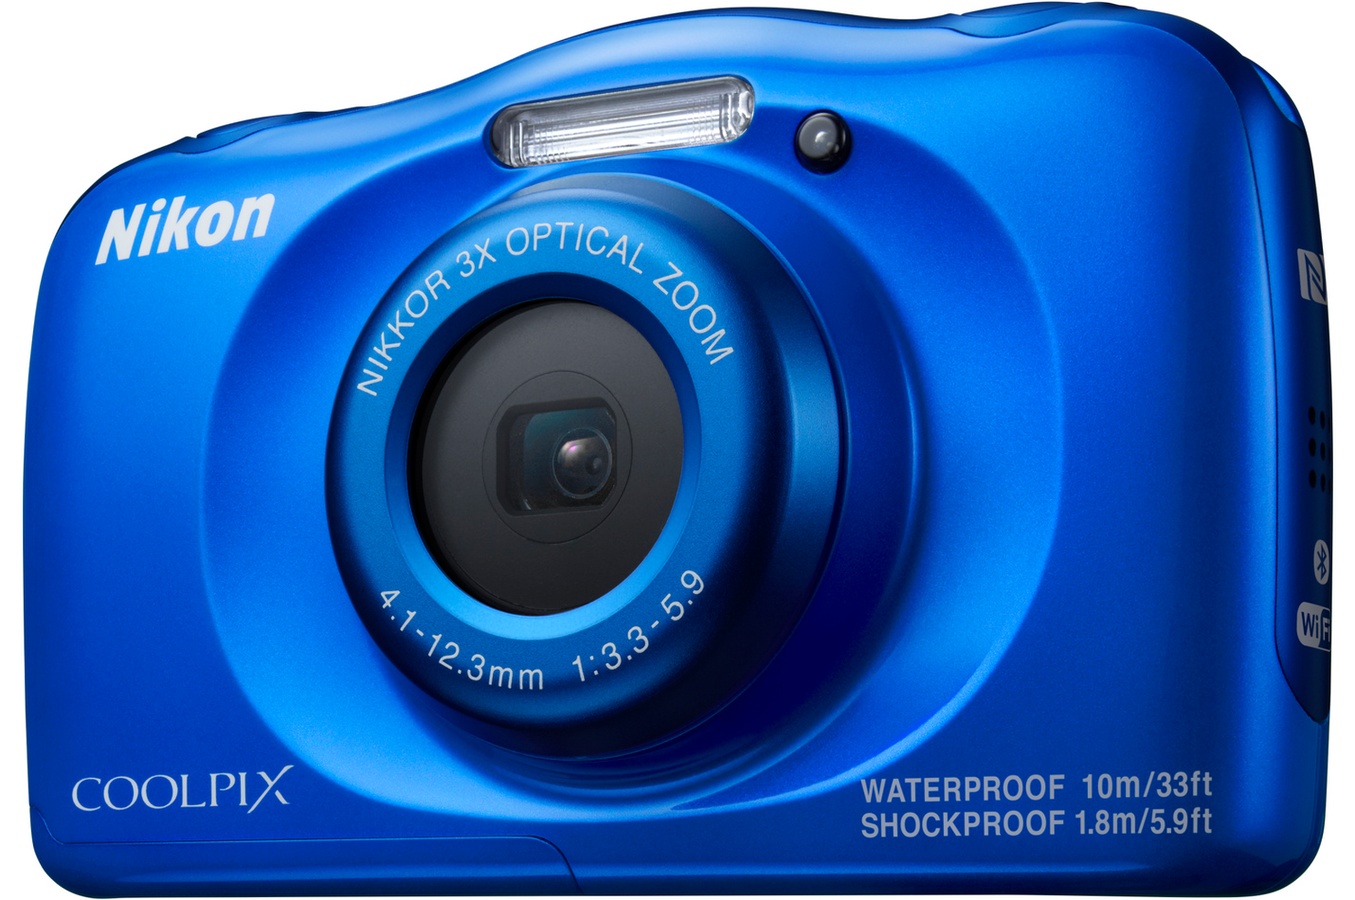 Cadeaux entreprise fin d'année - Appareil photo Nikon Coolpix bleu